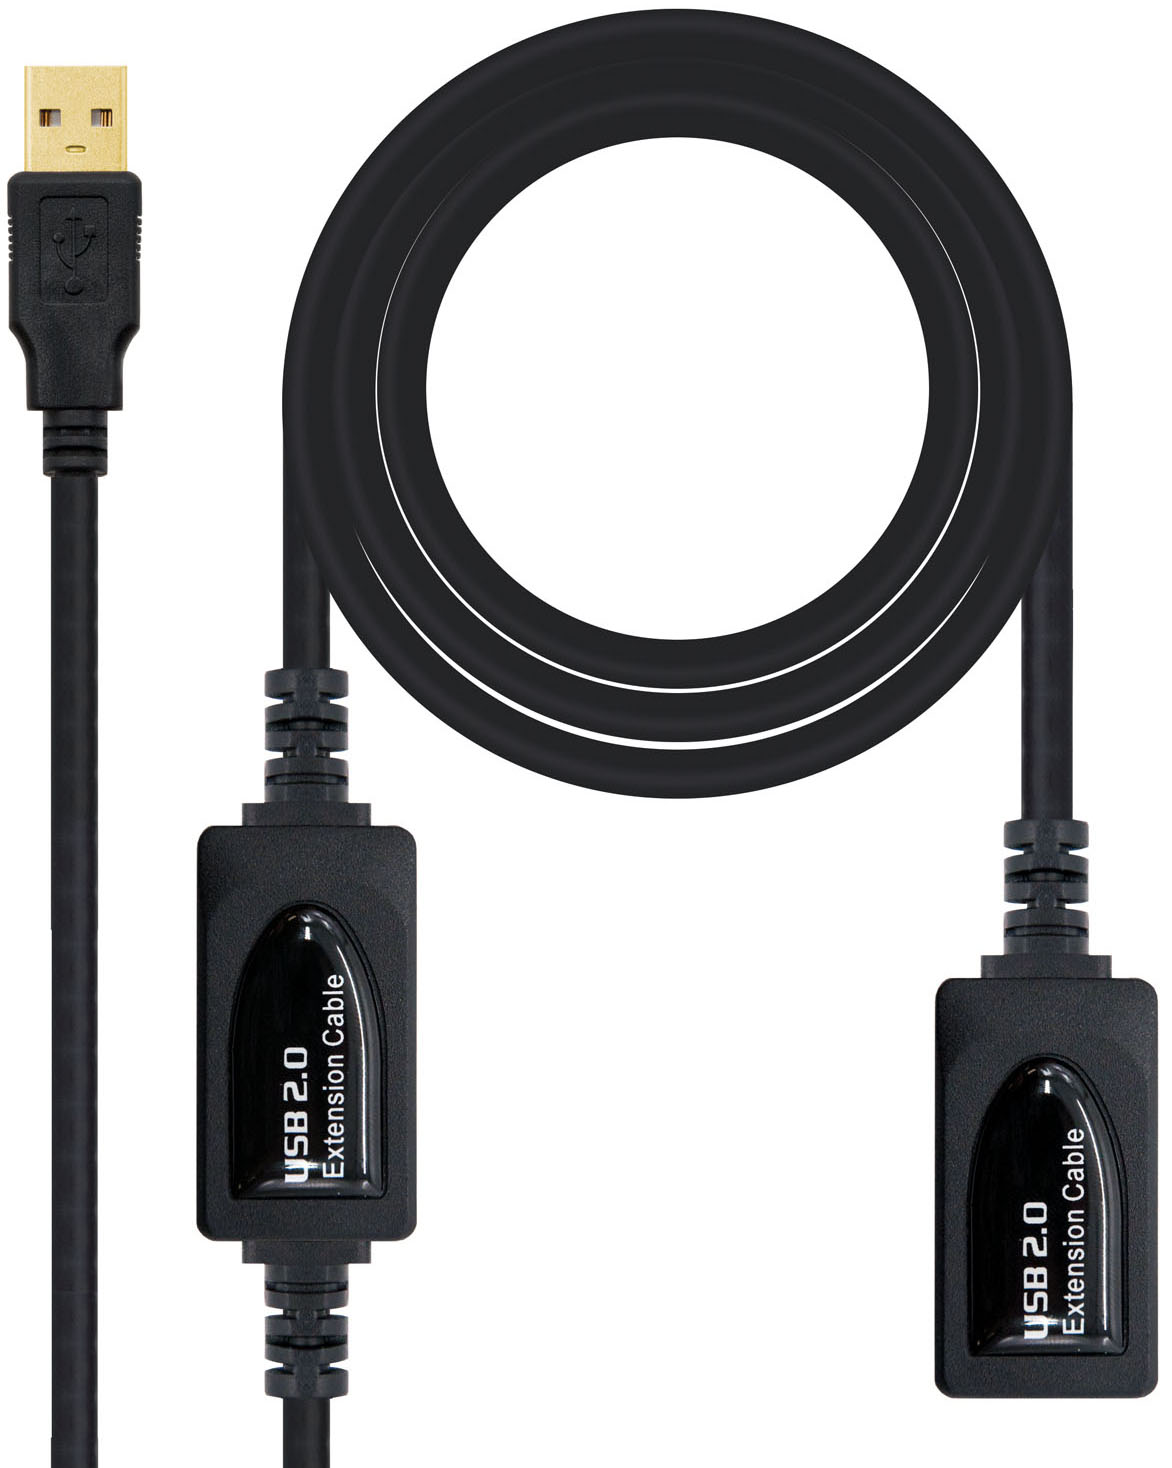 Nanocable - Cable USB 2.0 Nanocable Prolongador c/ Amplificador USB-A M/F 15 M